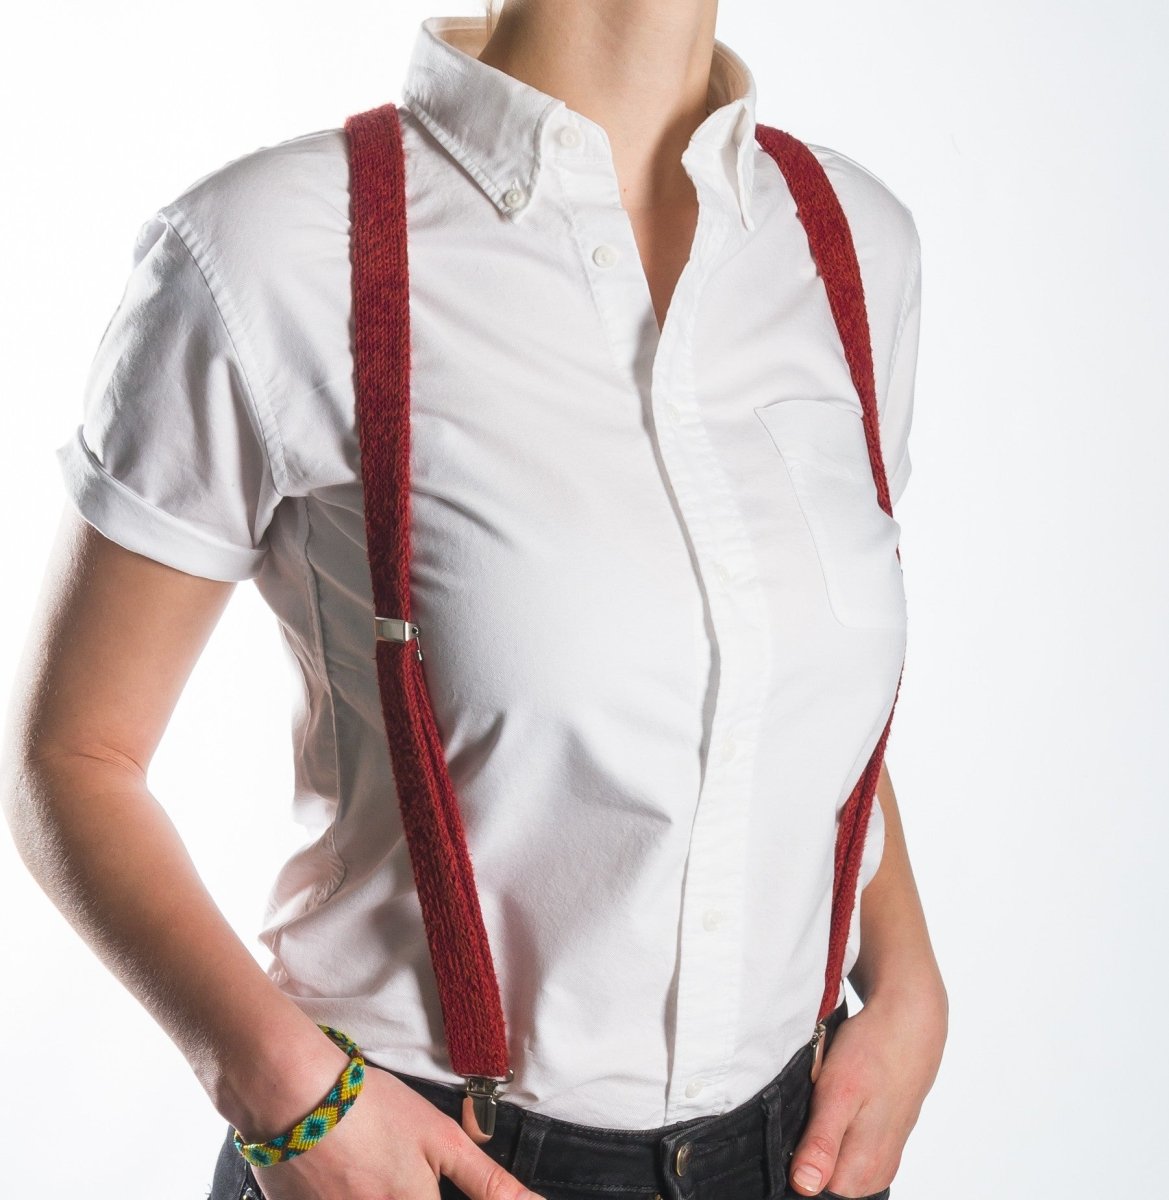 Red Suspenders / Bretels - Wool & Water